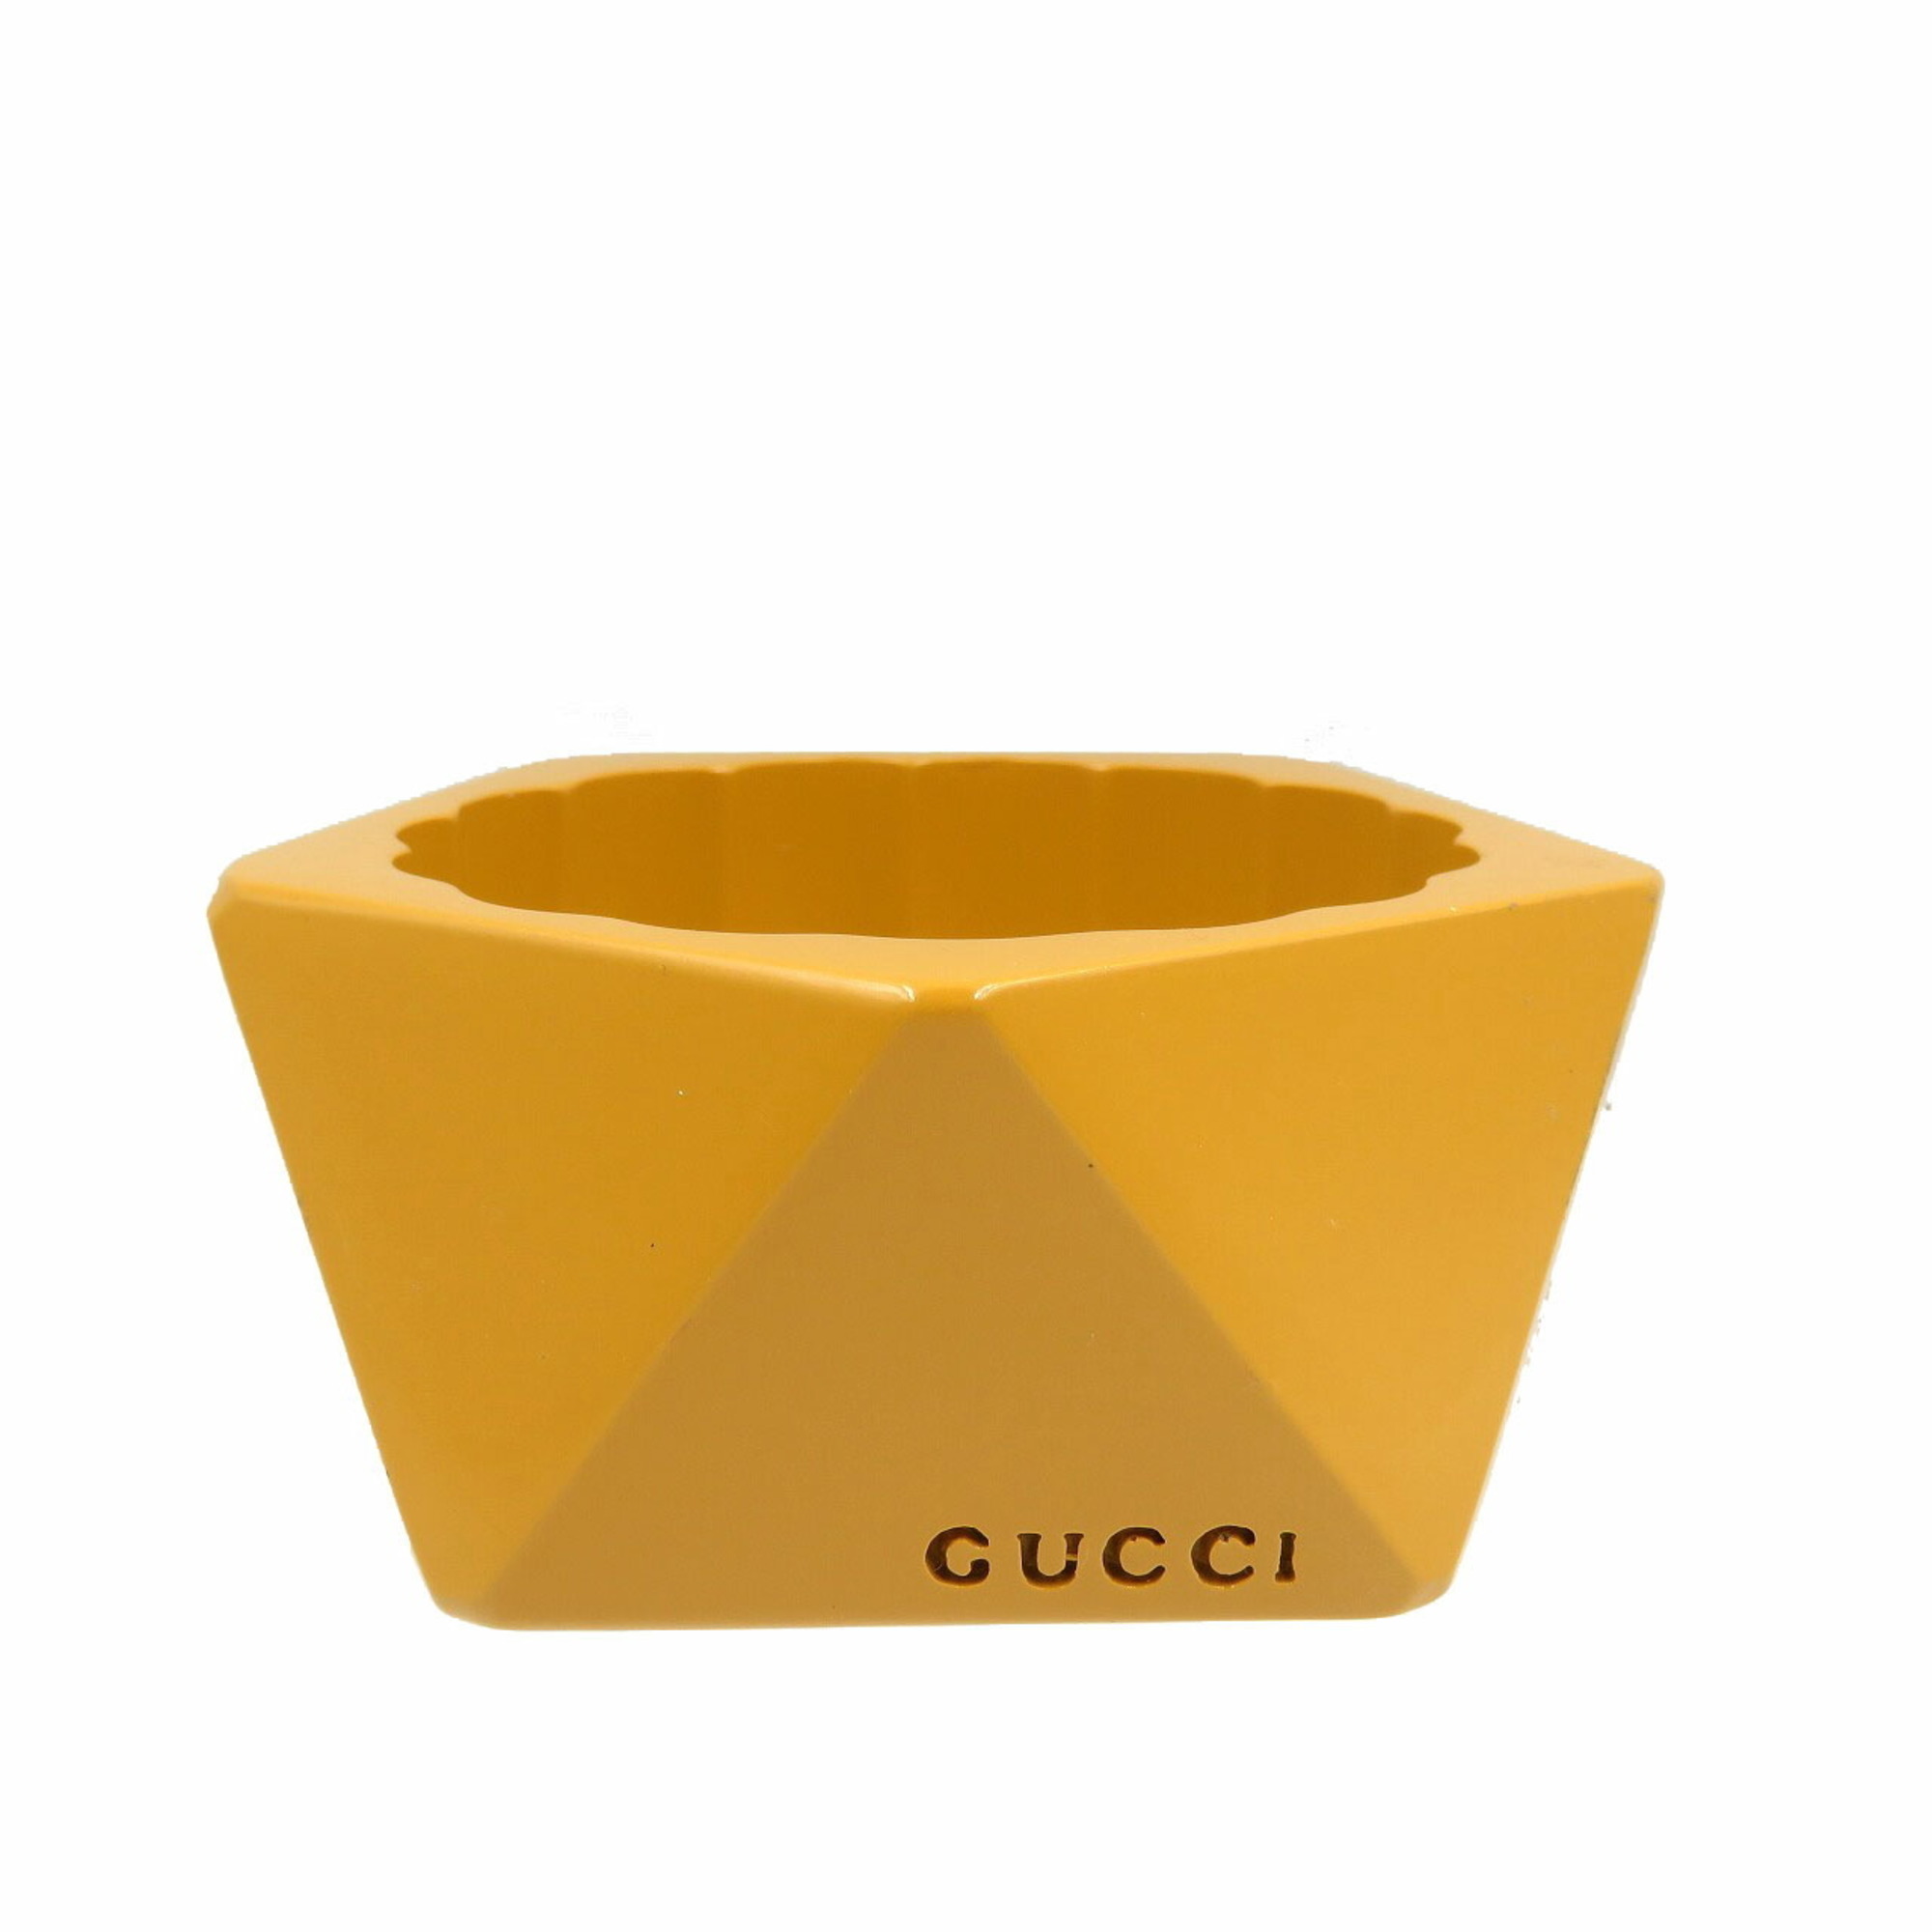 Gucci acrylic mustard yellow bangle 0115GUCCI